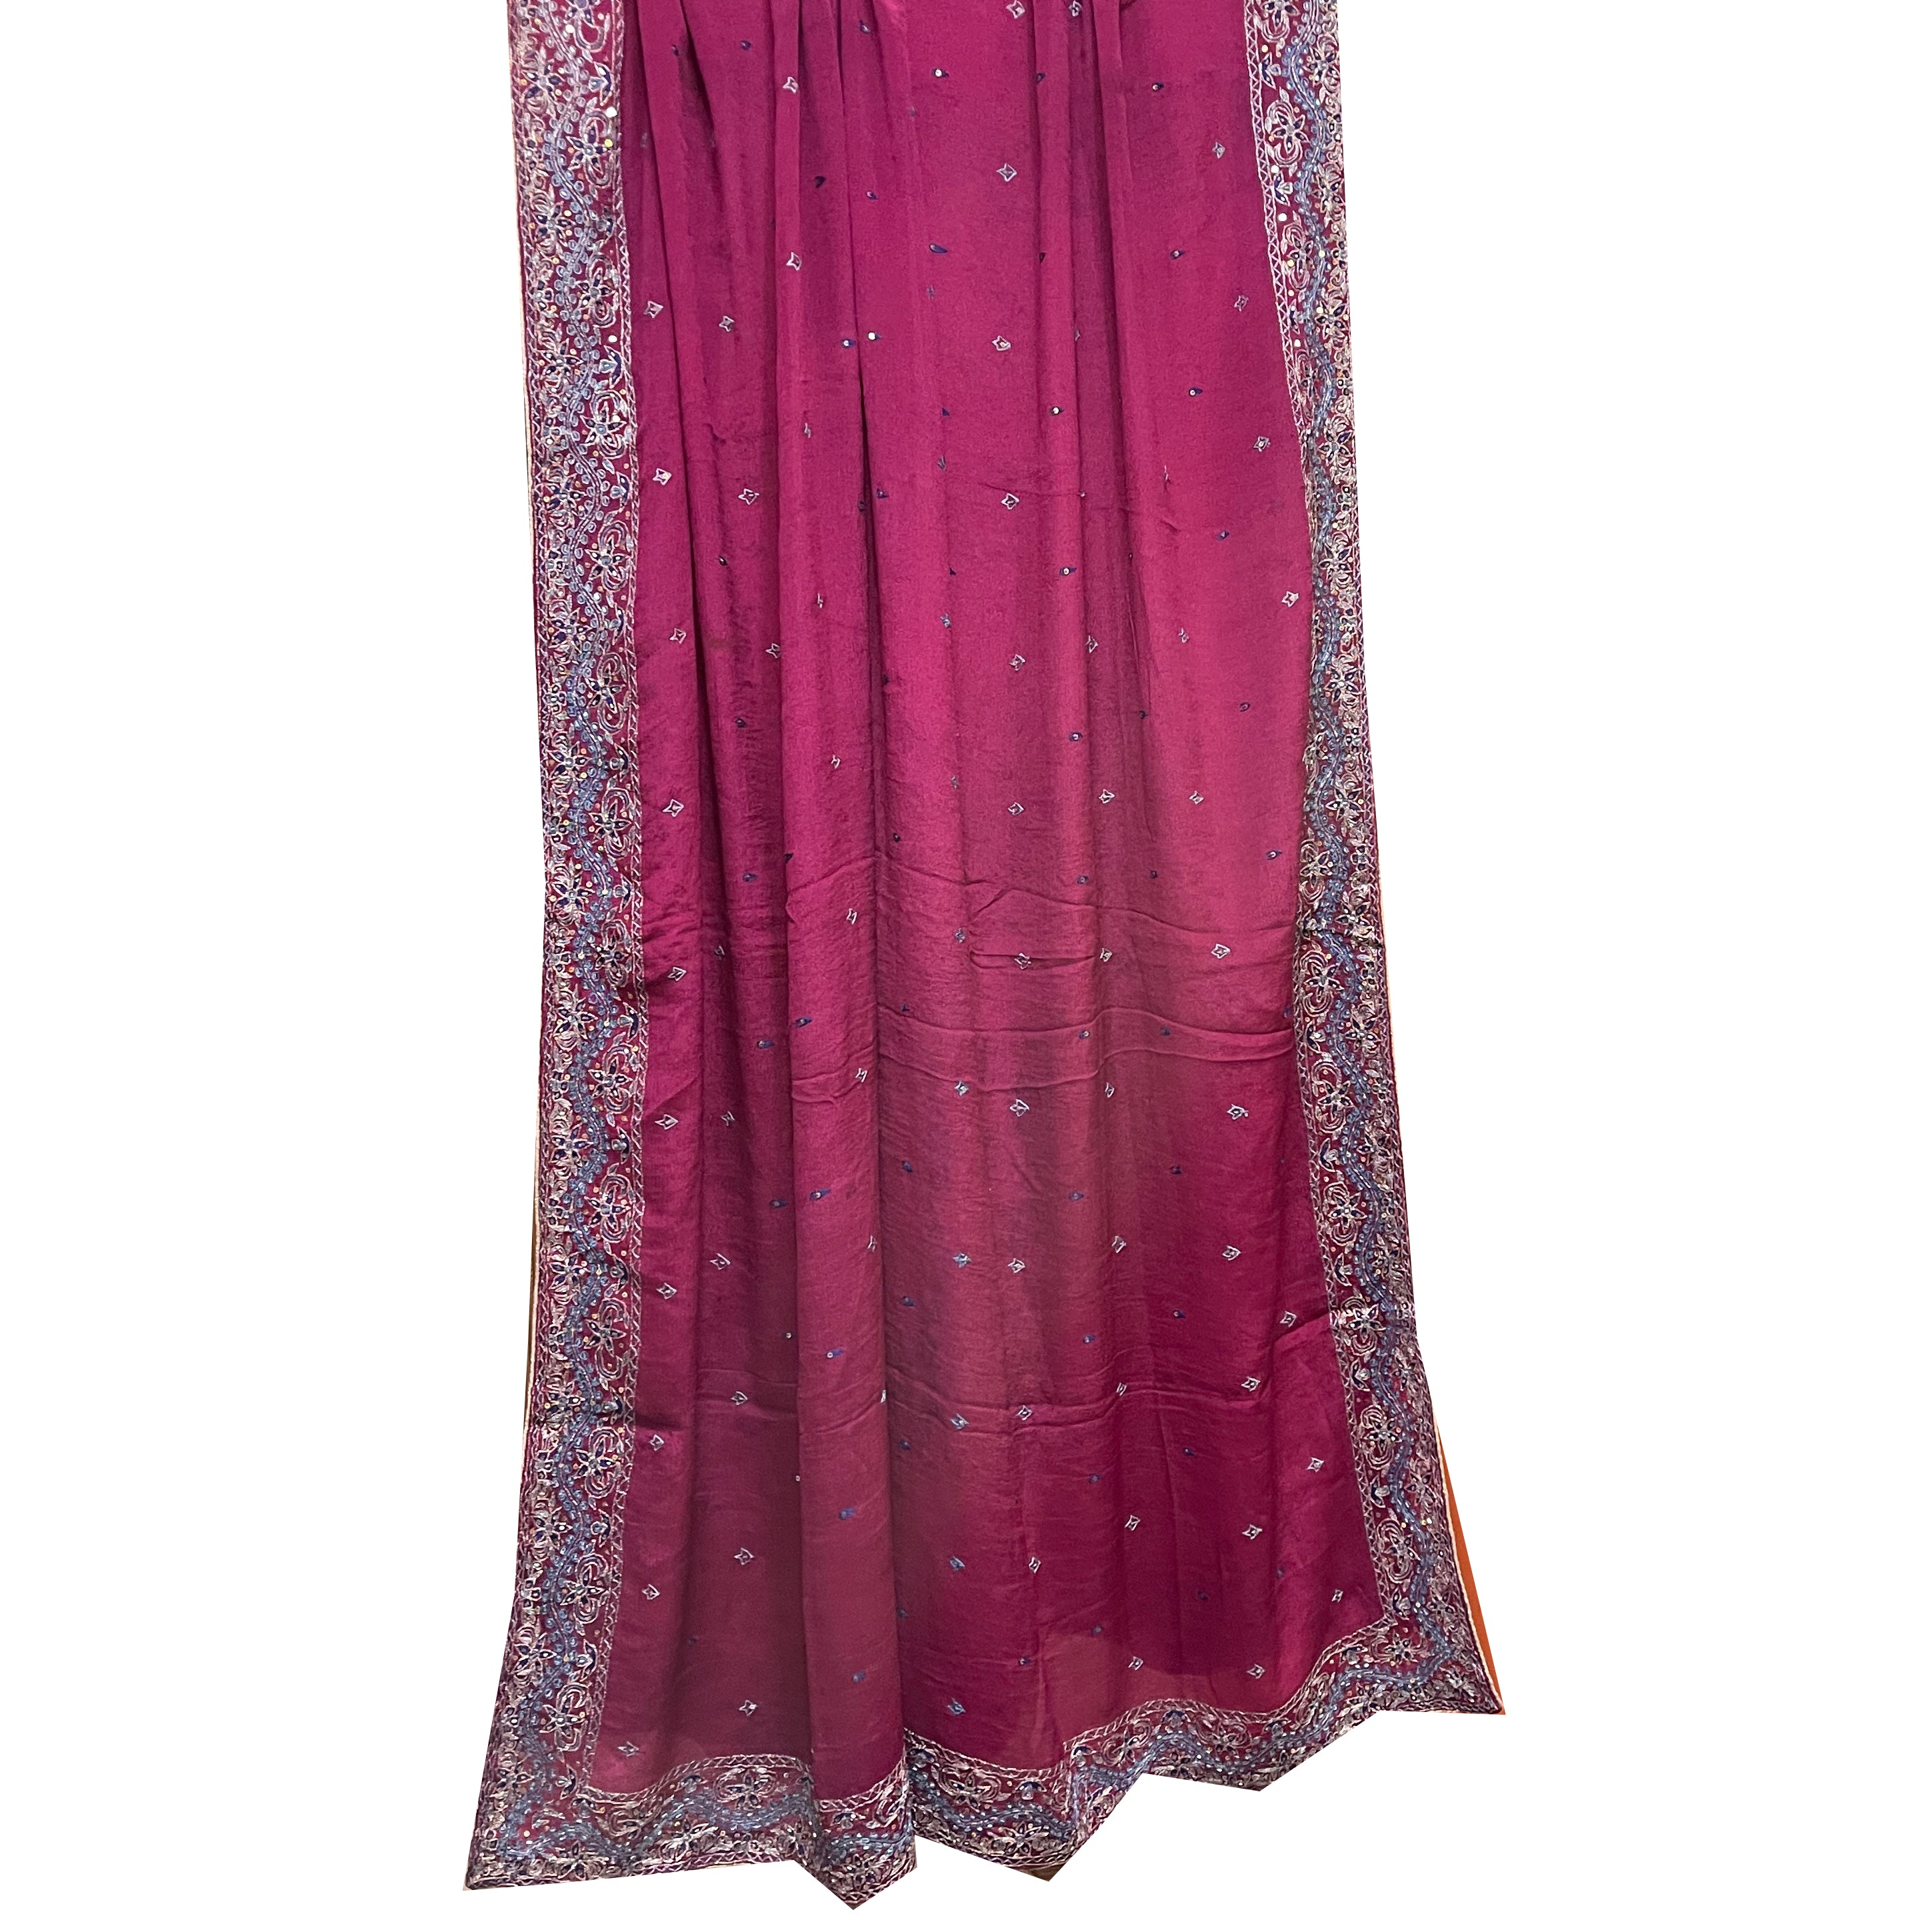 Vintage Dark Rani Pink Dupatta Scarf 8686 - Vintage India NYC